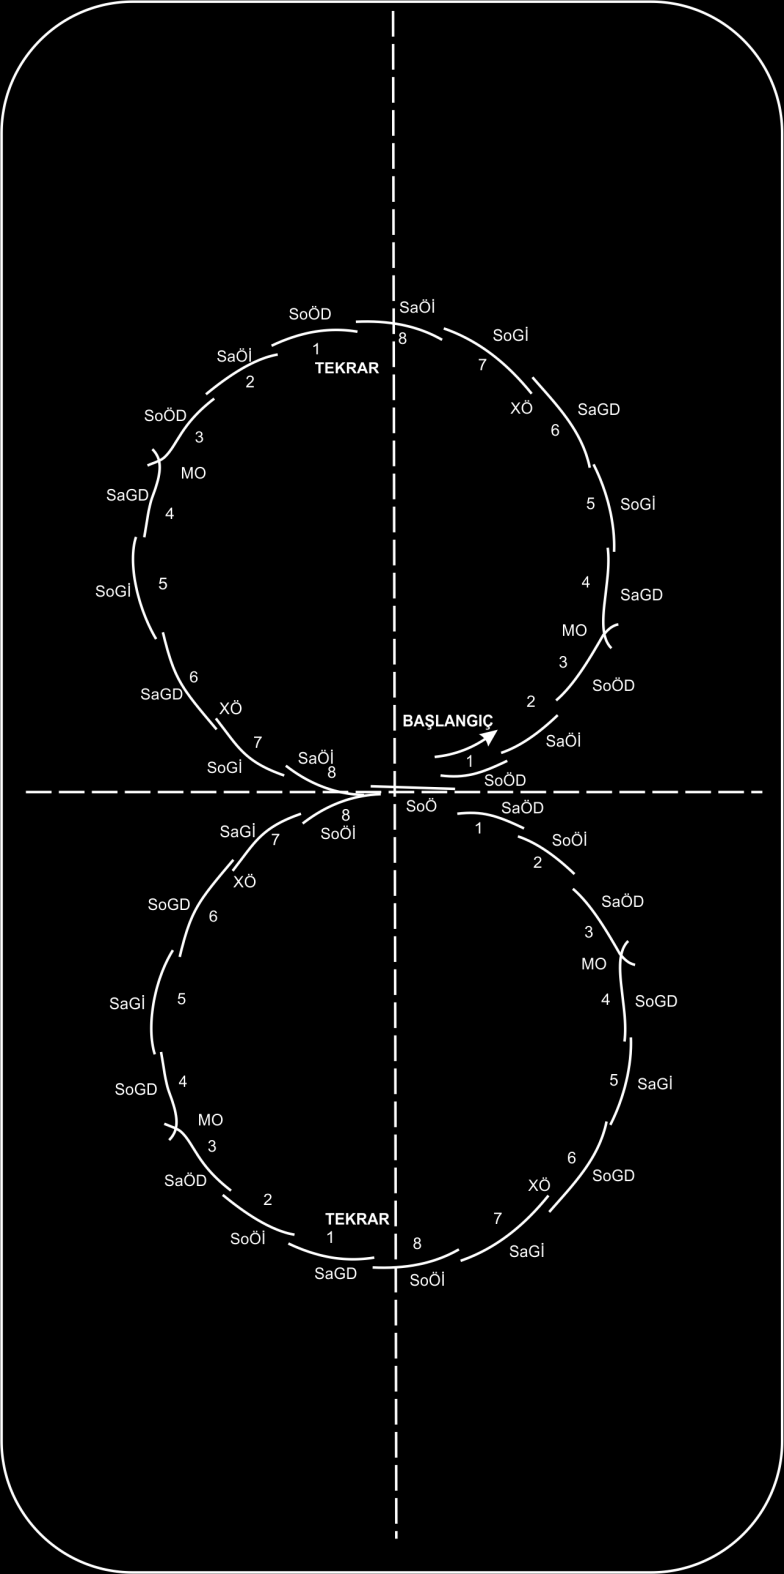 AS-KH3 - A Seviyesi Kayış Hareketleri 3 8 Adım Mohawk Dizisi: Hareketin ilk kısmında patenci saat yönünün tersine 2 adet 8 adım mohawk dizisi gerçekleştirir.